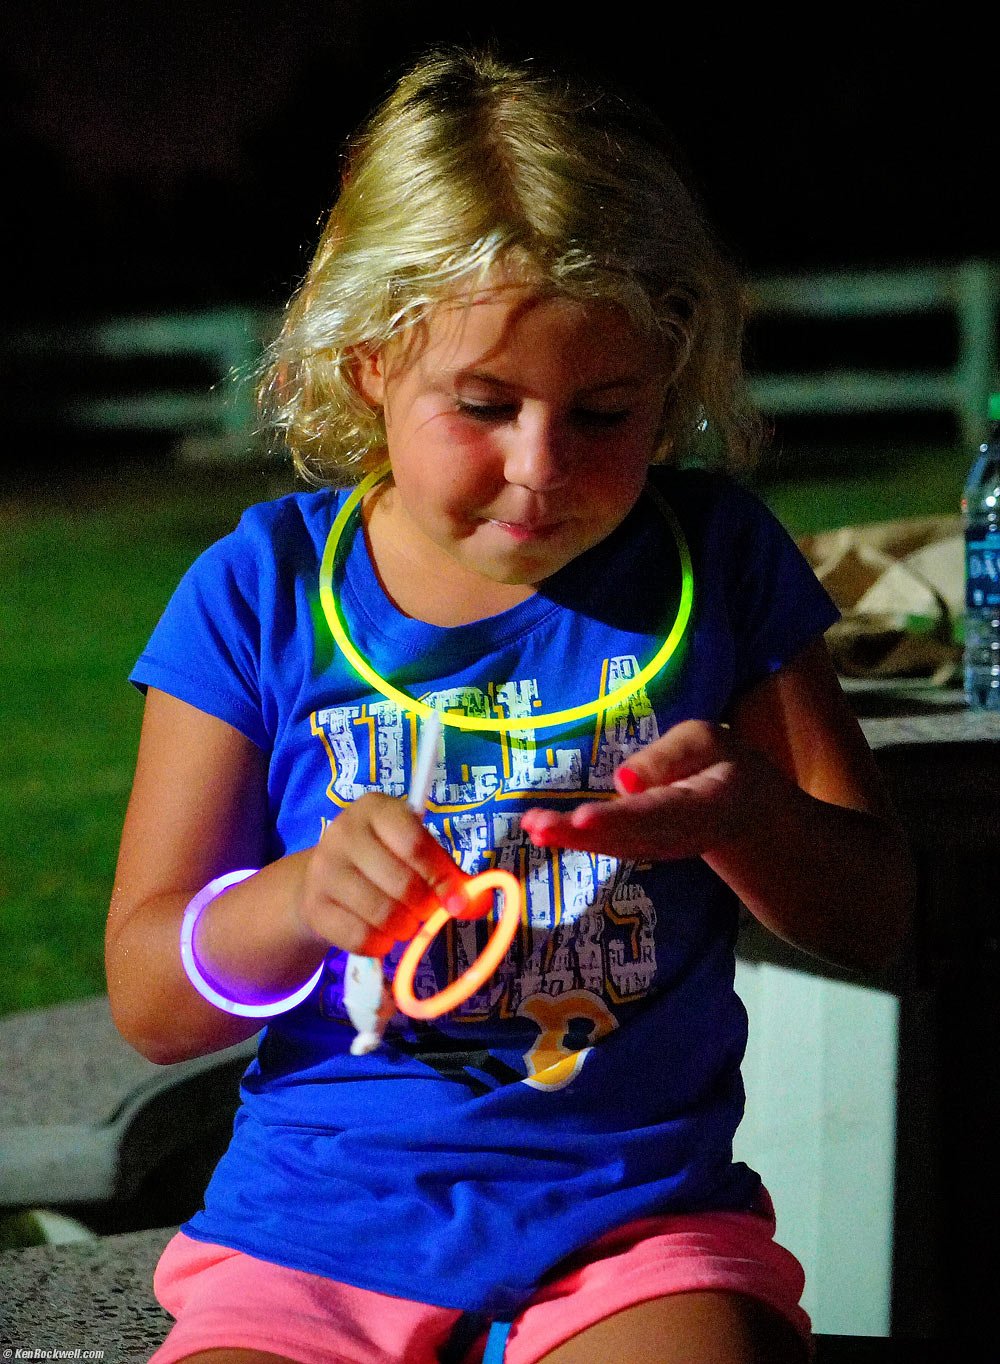 Katie lit by glow sticks, 11 September 2015